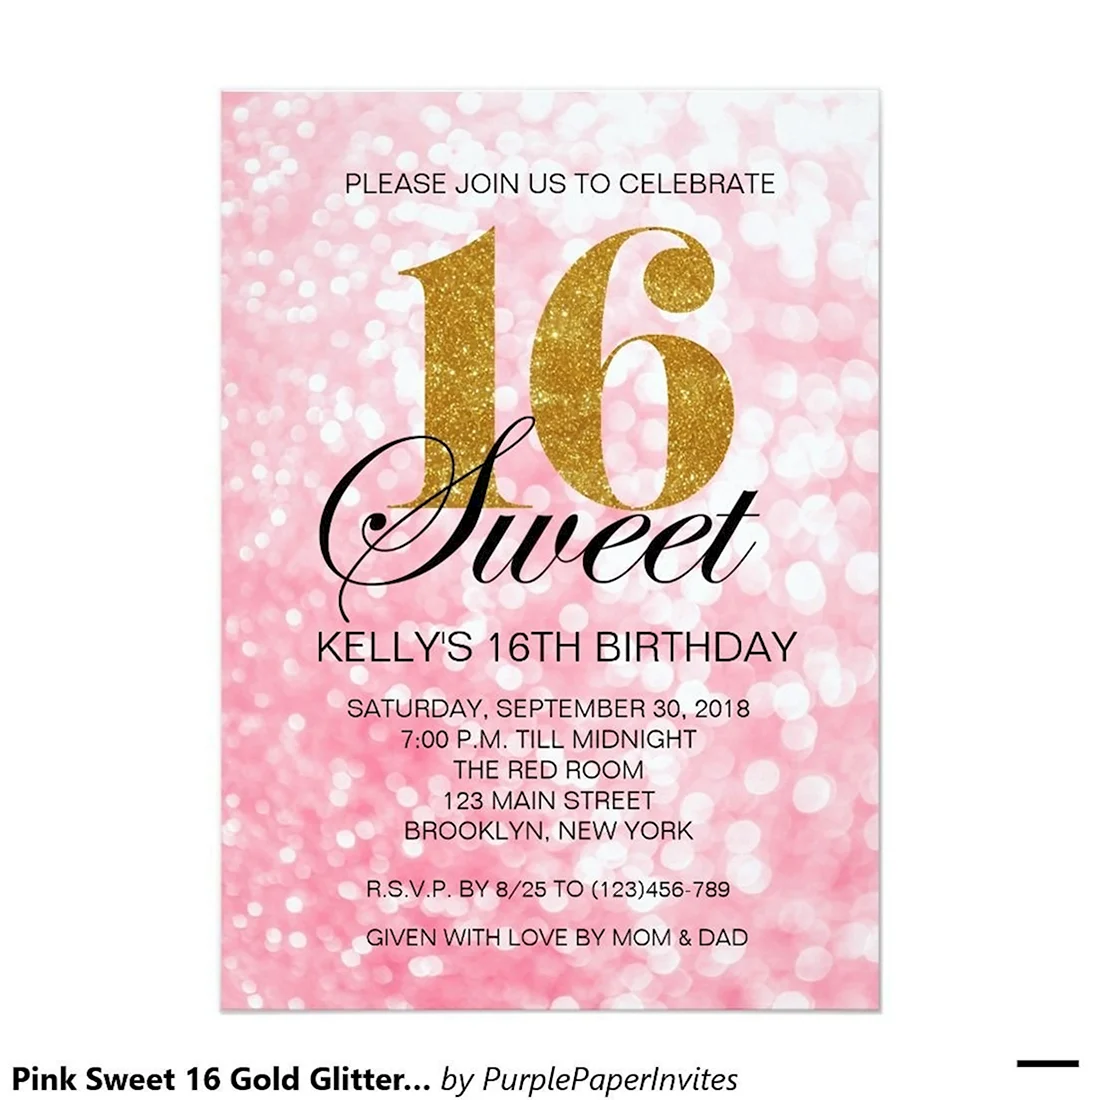 Приглашение на Sweet 16. Открытка для женщины